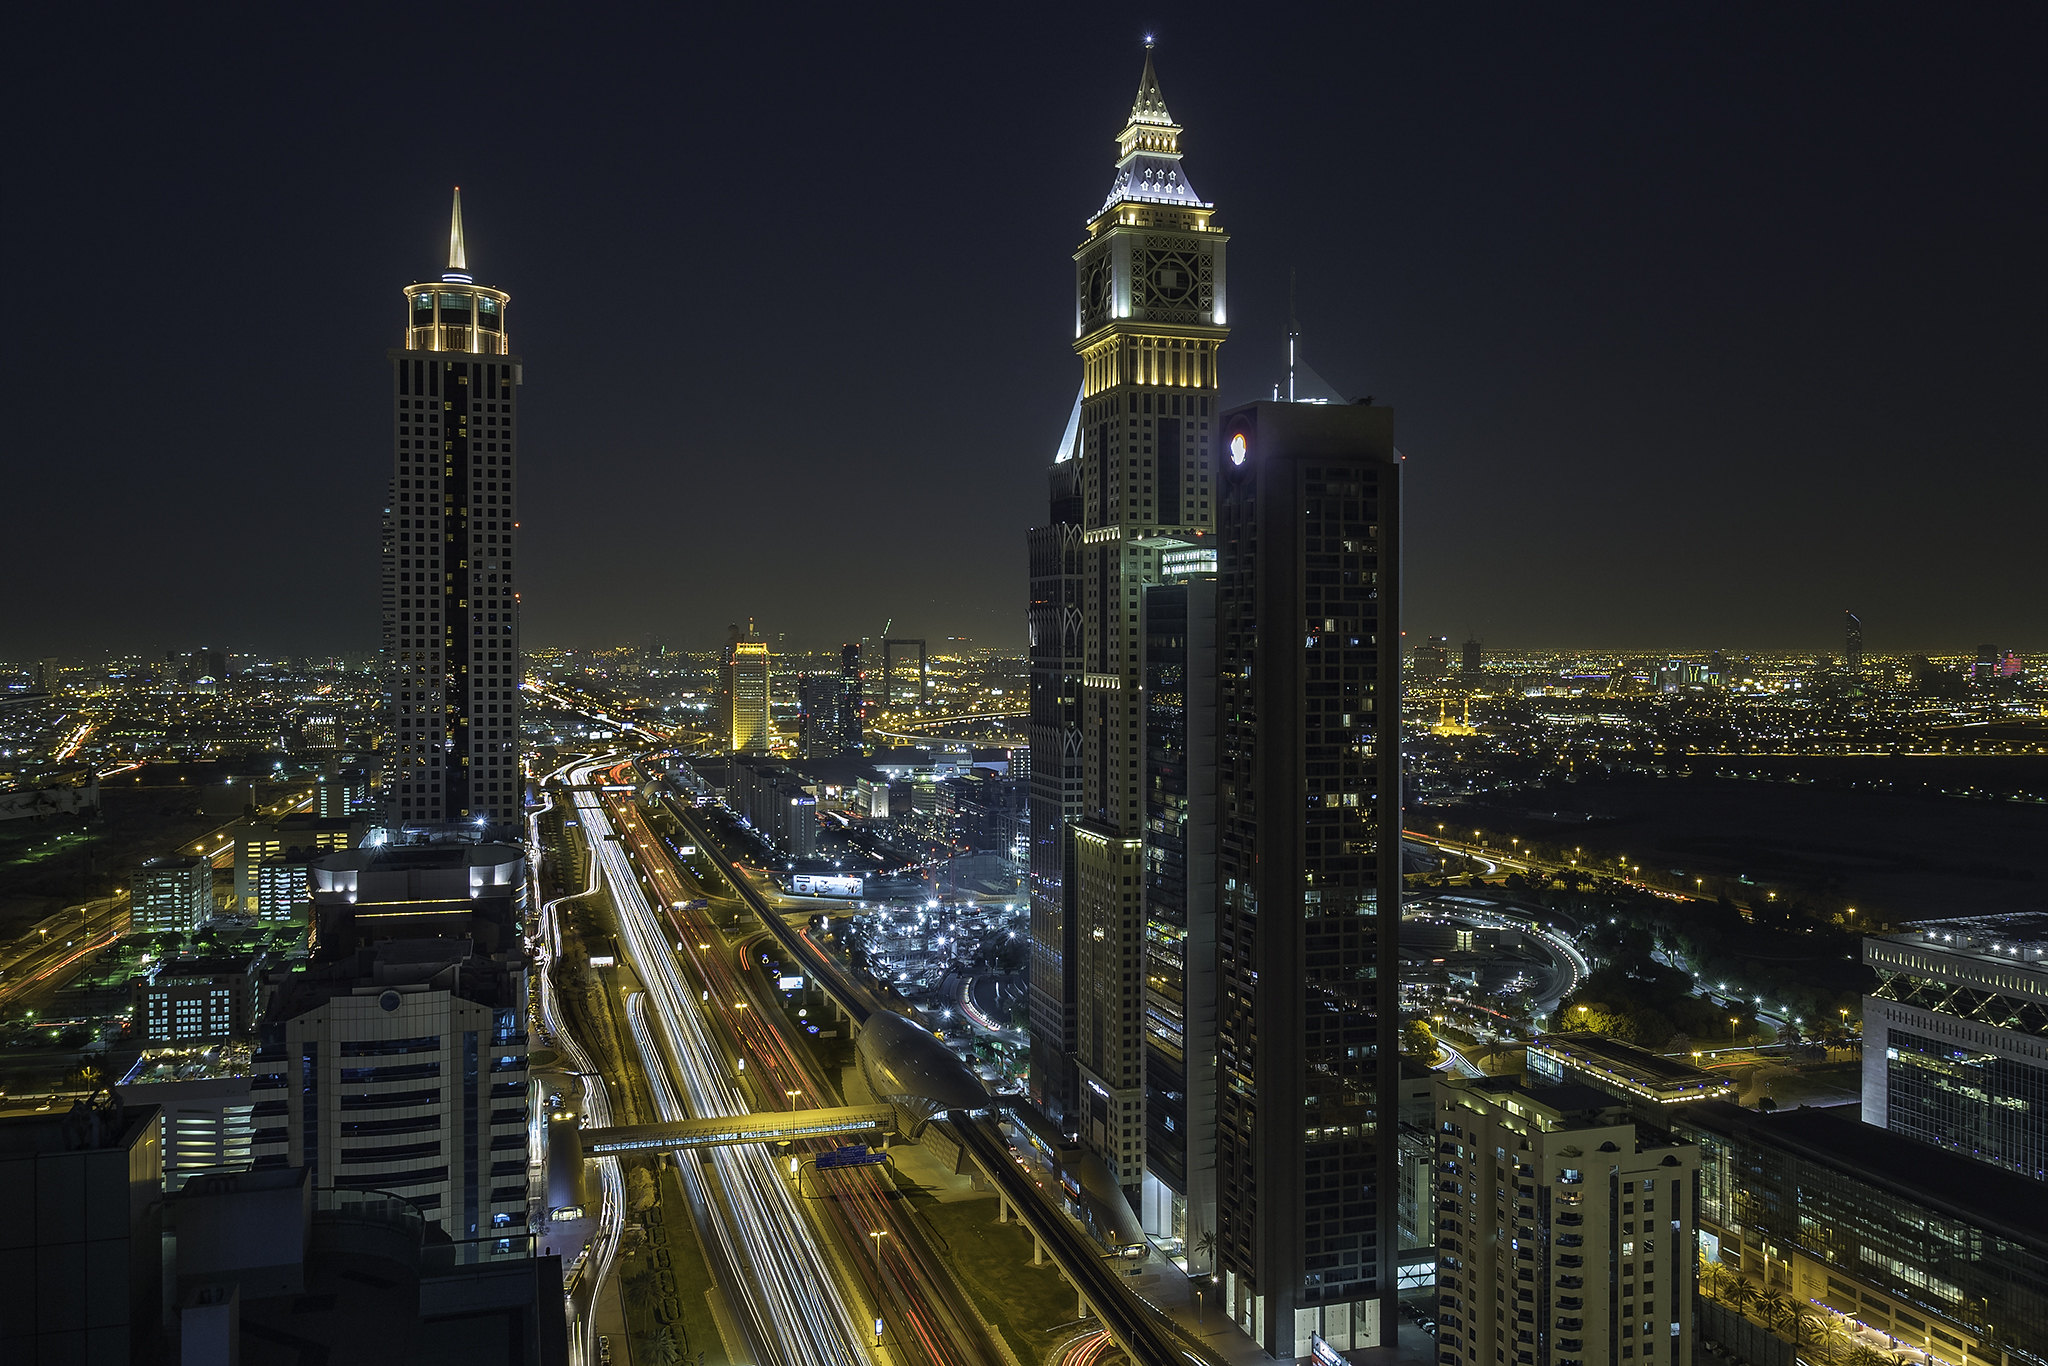 Wallpapers lights illumination Dubai on the desktop